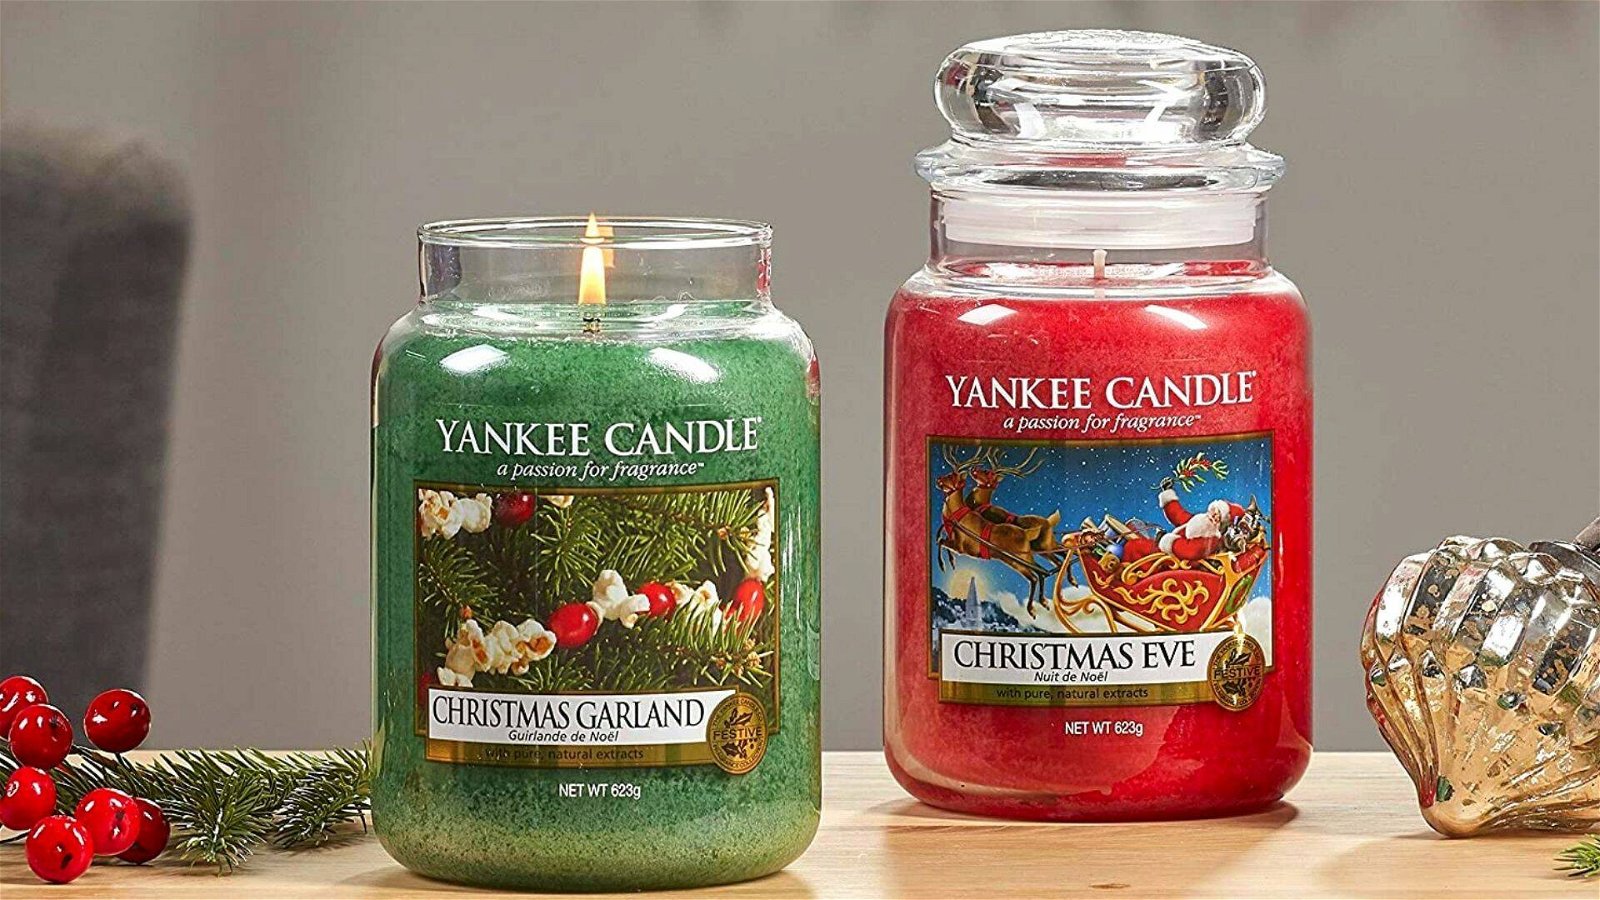 Immagine di Profumo di Natale con le nuove offerte Amazon sulle Yankee Candle!